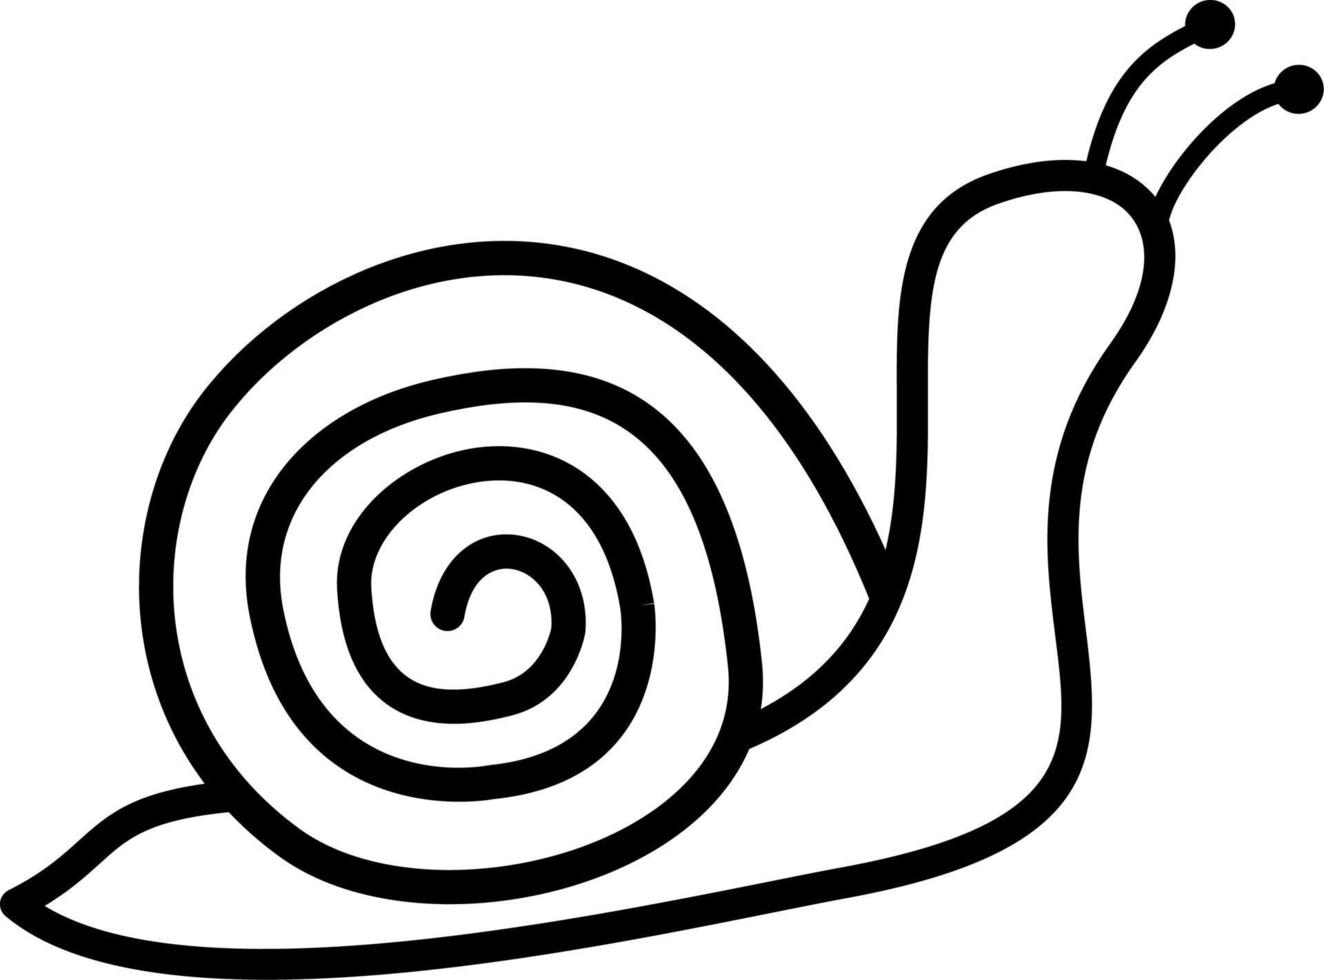 icona, logo, illustrazione e vettore del fumetto della linea della lumaca